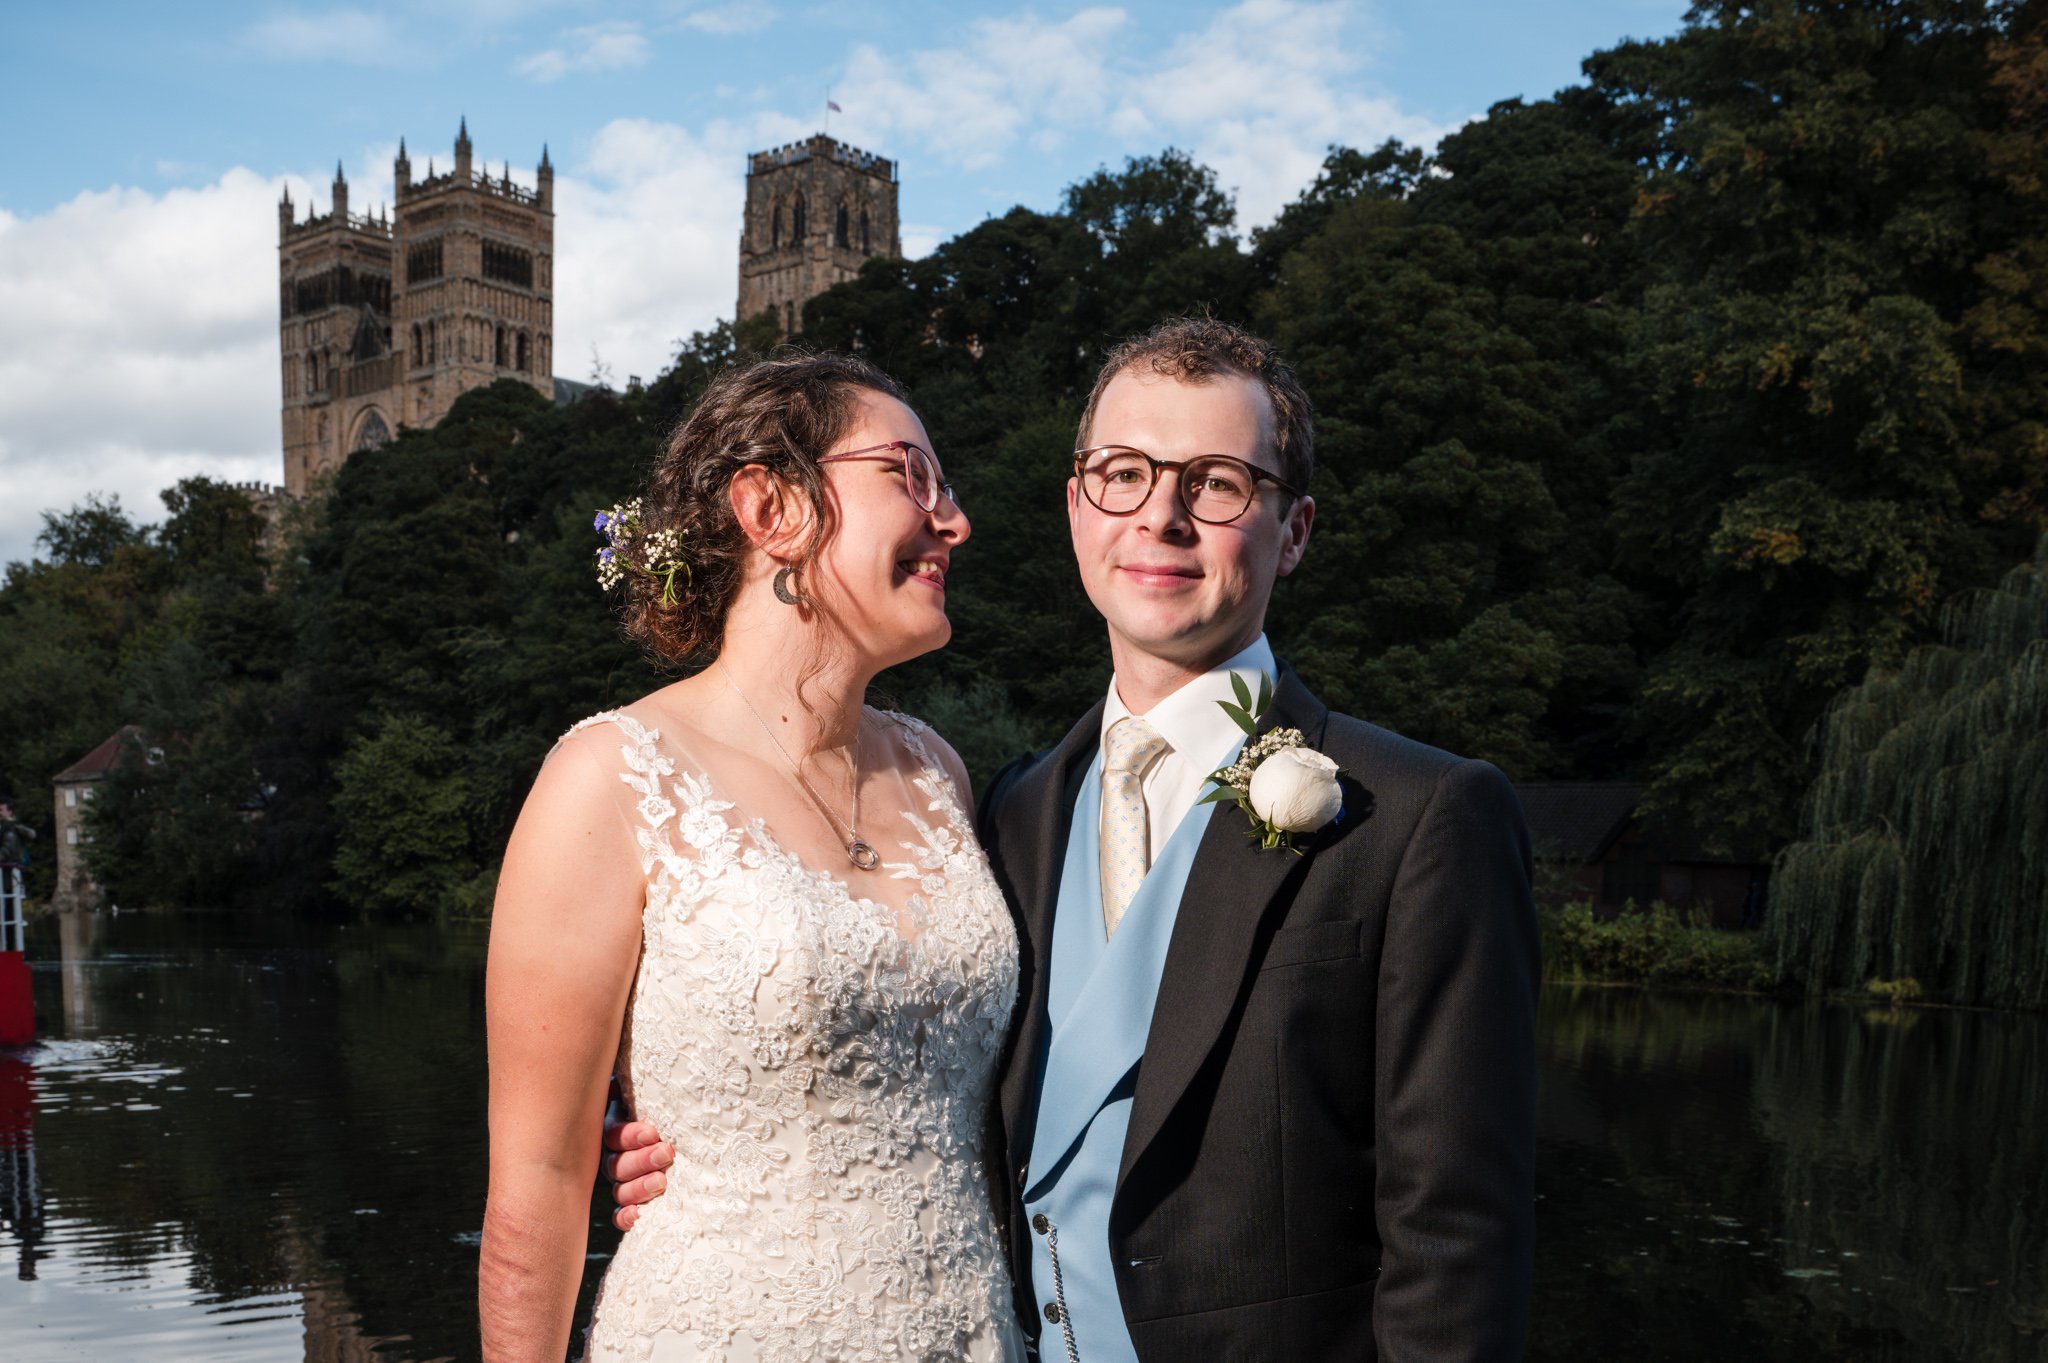 St-Chads-College-Durham-Wedding-Photography (19 of 20).jpg